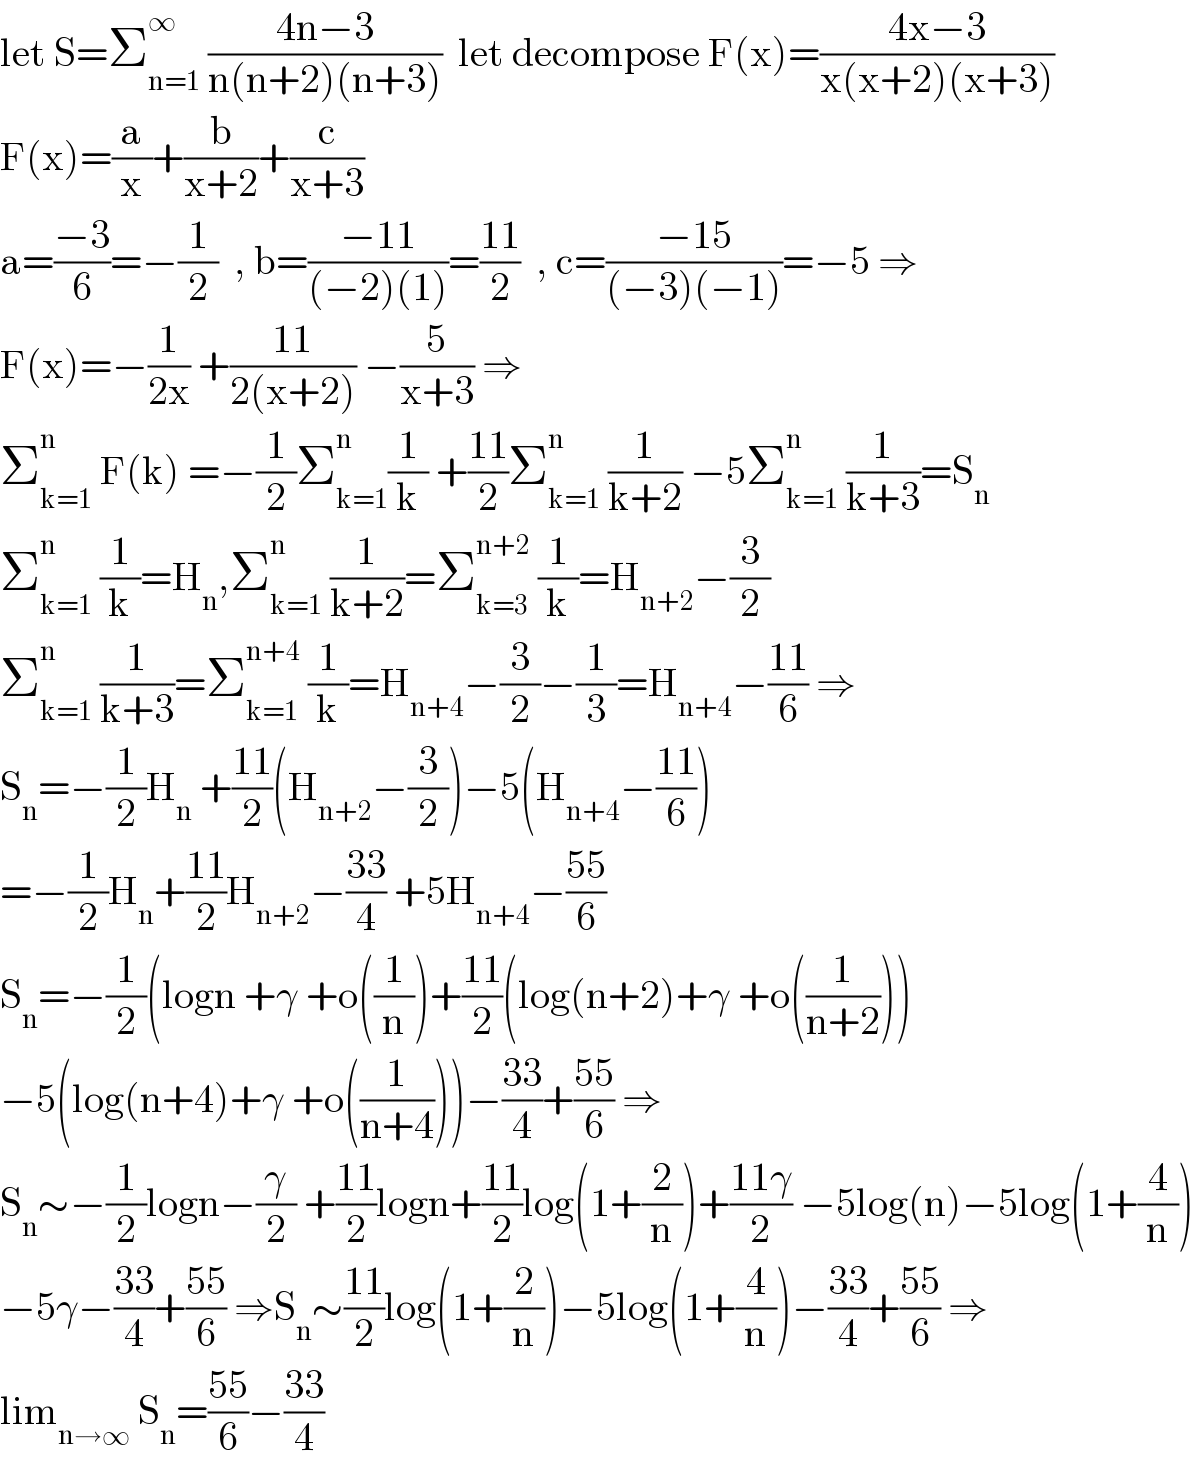 let S=Σ_(n=1) ^∞  ((4n−3)/(n(n+2)(n+3)))  let decompose F(x)=((4x−3)/(x(x+2)(x+3)))  F(x)=(a/x)+(b/(x+2))+(c/(x+3))  a=((−3)/6)=−(1/2)  , b=((−11)/((−2)(1)))=((11)/2)  , c=((−15)/((−3)(−1)))=−5 ⇒  F(x)=−(1/(2x)) +((11)/(2(x+2))) −(5/(x+3)) ⇒  Σ_(k=1) ^(n )  F(k) =−(1/2)Σ_(k=1) ^(n ) (1/k) +((11)/2)Σ_(k=1) ^n  (1/(k+2)) −5Σ_(k=1) ^n  (1/(k+3))=S_n   Σ_(k=1) ^n  (1/k)=H_n ,Σ_(k=1) ^n  (1/(k+2))=Σ_(k=3) ^(n+2)  (1/k)=H_(n+2) −(3/2)  Σ_(k=1) ^n  (1/(k+3))=Σ_(k=1) ^(n+4)  (1/k)=H_(n+4) −(3/2)−(1/3)=H_(n+4) −((11)/6) ⇒  S_n =−(1/2)H_n  +((11)/2)(H_(n+2) −(3/2))−5(H_(n+4) −((11)/6))  =−(1/2)H_n +((11)/2)H_(n+2) −((33)/4) +5H_(n+4) −((55)/6)  S_n =−(1/2)(logn +γ +o((1/n))+((11)/2)(log(n+2)+γ +o((1/(n+2))))  −5(log(n+4)+γ +o((1/(n+4))))−((33)/4)+((55)/6) ⇒  S_n ∼−(1/2)logn−(γ/2) +((11)/2)logn+((11)/2)log(1+(2/n))+((11γ)/2) −5log(n)−5log(1+(4/n))  −5γ−((33)/4)+((55)/6) ⇒S_n ∼((11)/2)log(1+(2/n))−5log(1+(4/n))−((33)/4)+((55)/6) ⇒  lim_(n→∞)  S_n =((55)/6)−((33)/4)  